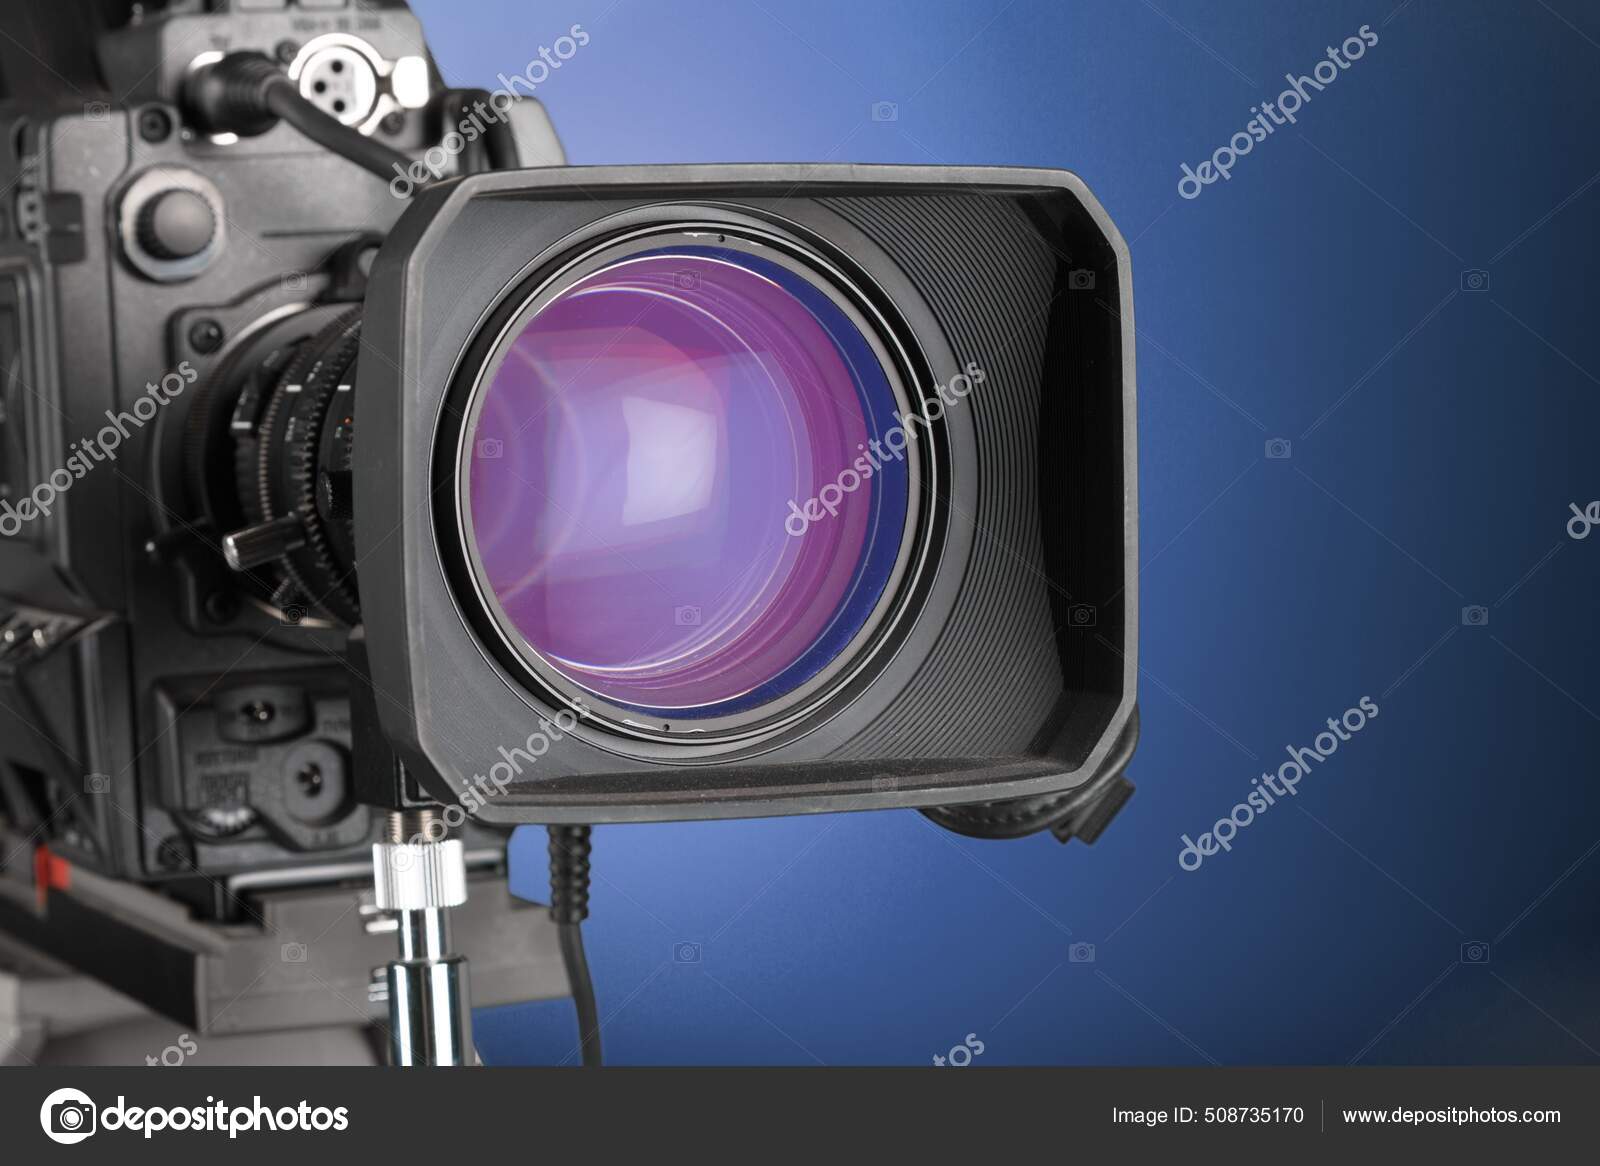 Lente Cámara Montaje Vídeo Profesional: fotografía de stock © #508735170 | Depositphotos